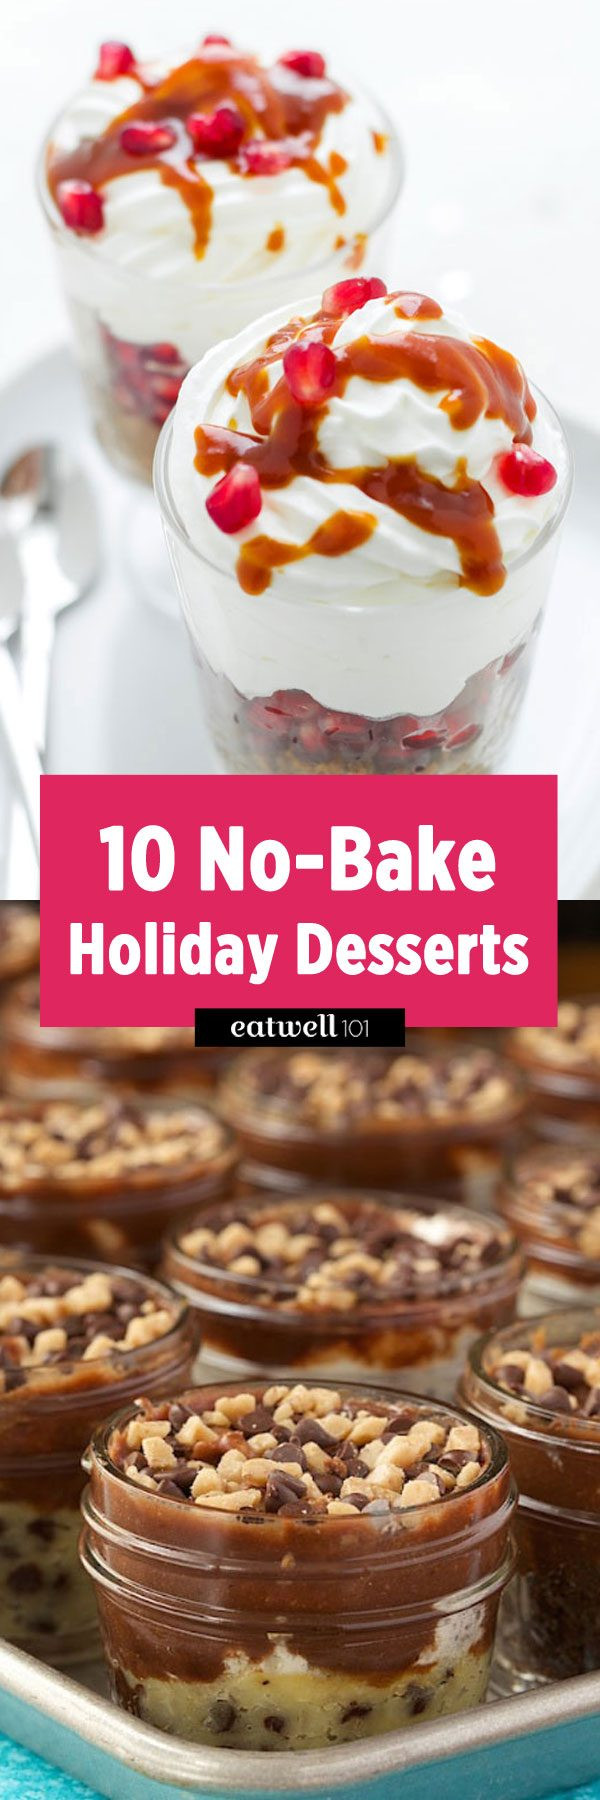 No Bake Holiday Desserts
 10 No Bake Holiday Dessert Recipes — Eatwell101